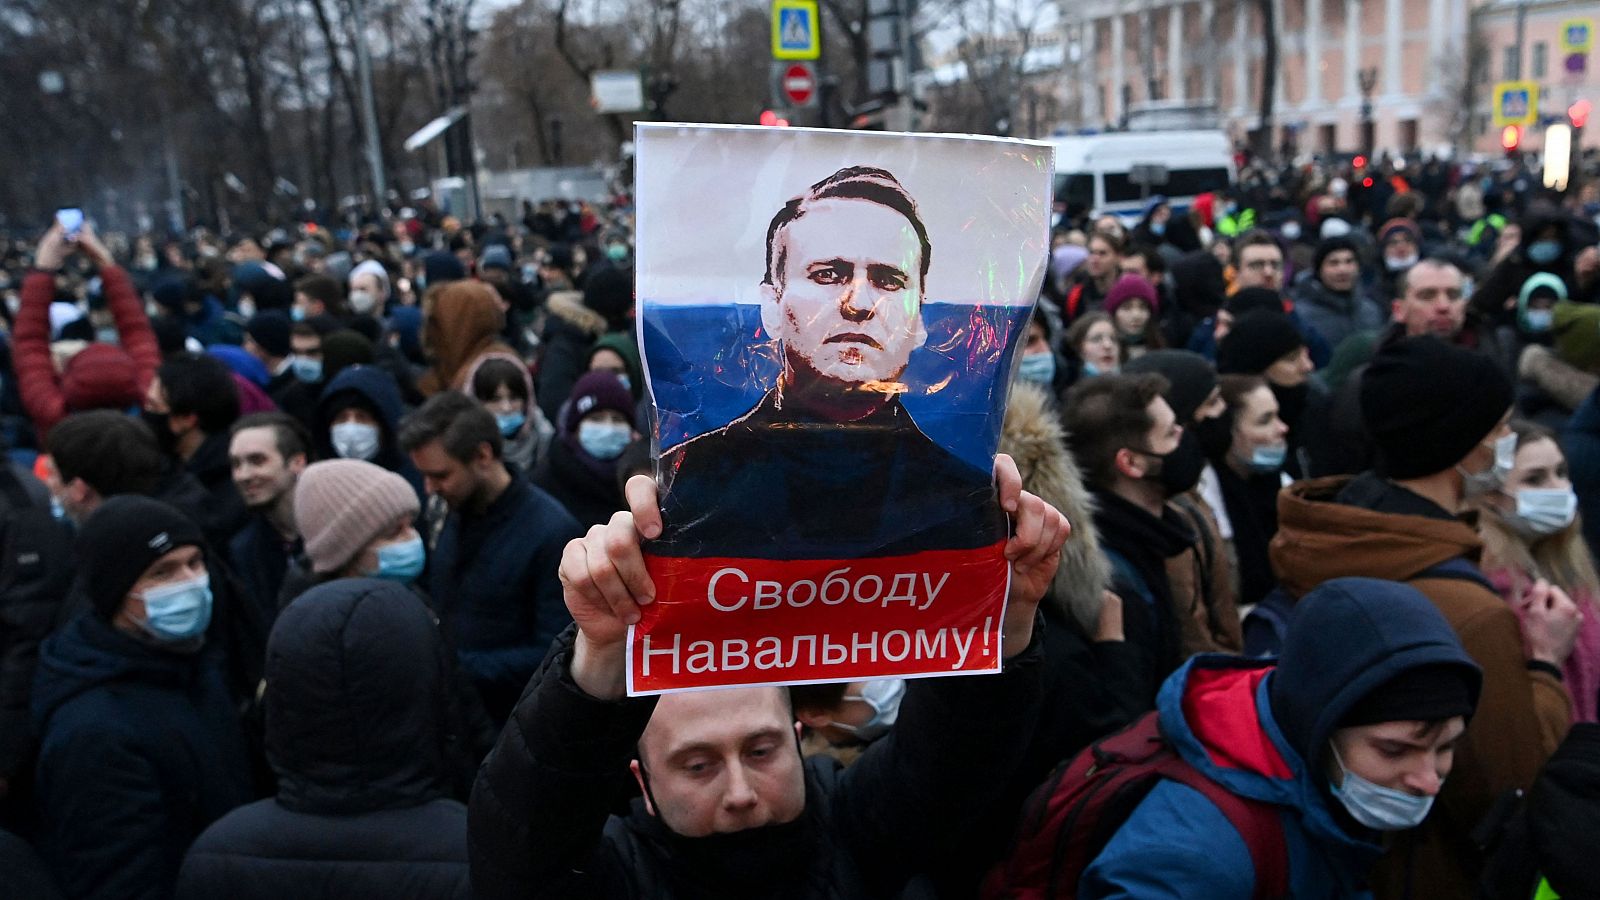 Los opositores en Rusia acaban encarcelados, exiliados o muertos